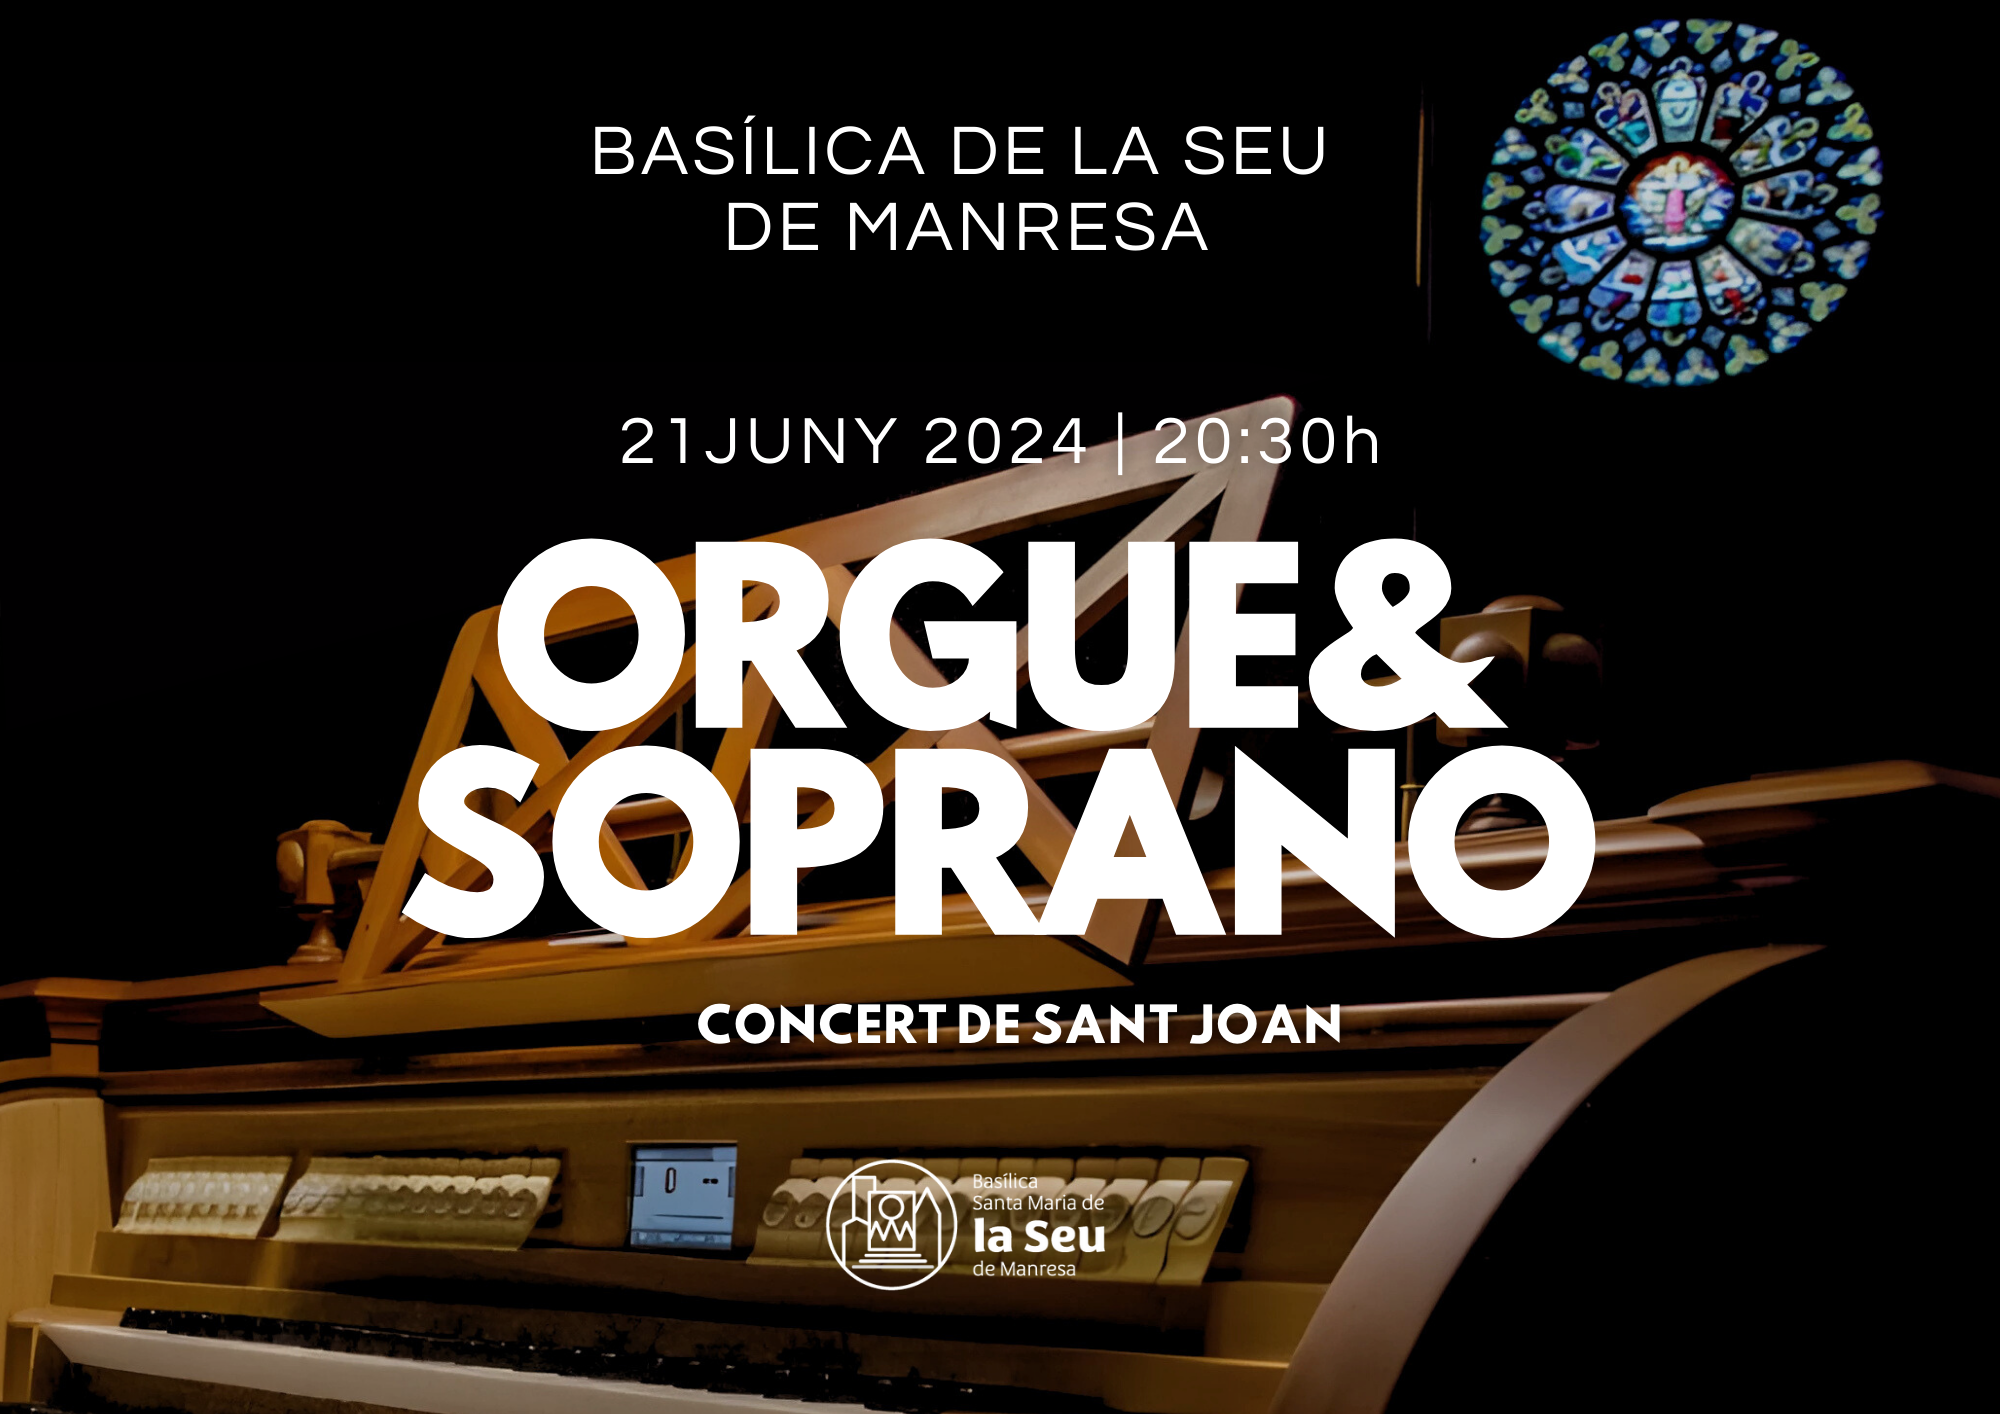 Concert de Sant Joan d'orgue i soprano